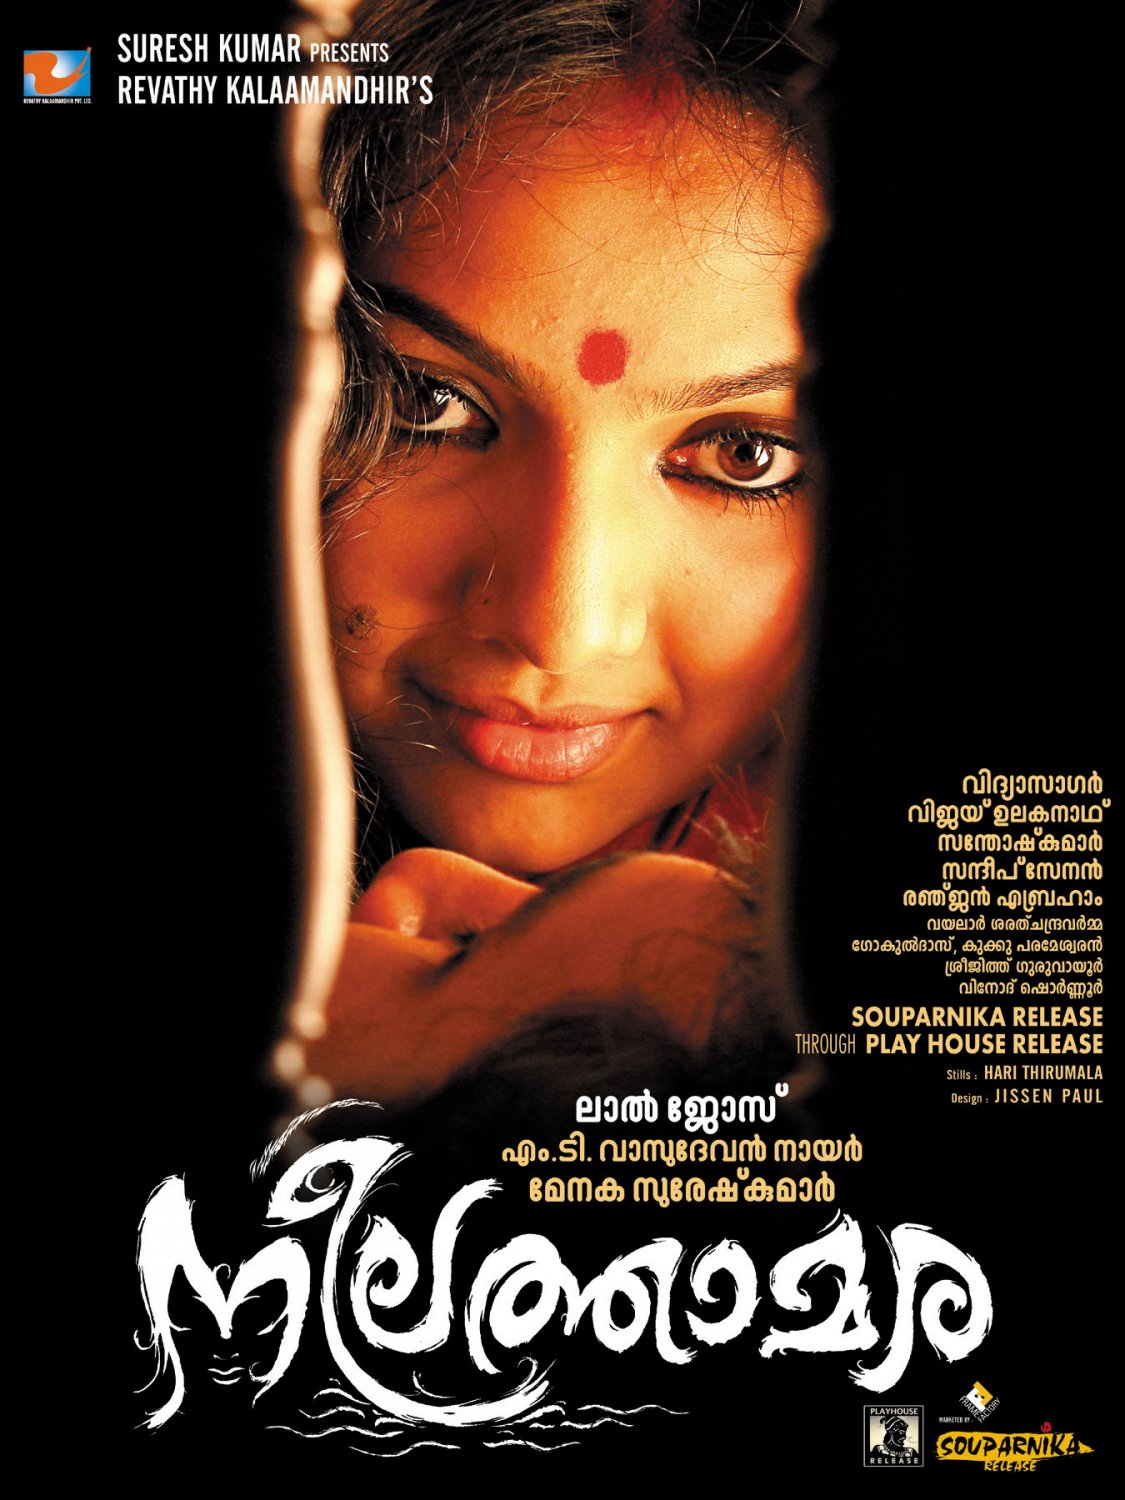 Extra Large Movie Poster Image for Neelathamara (#11 of 12)